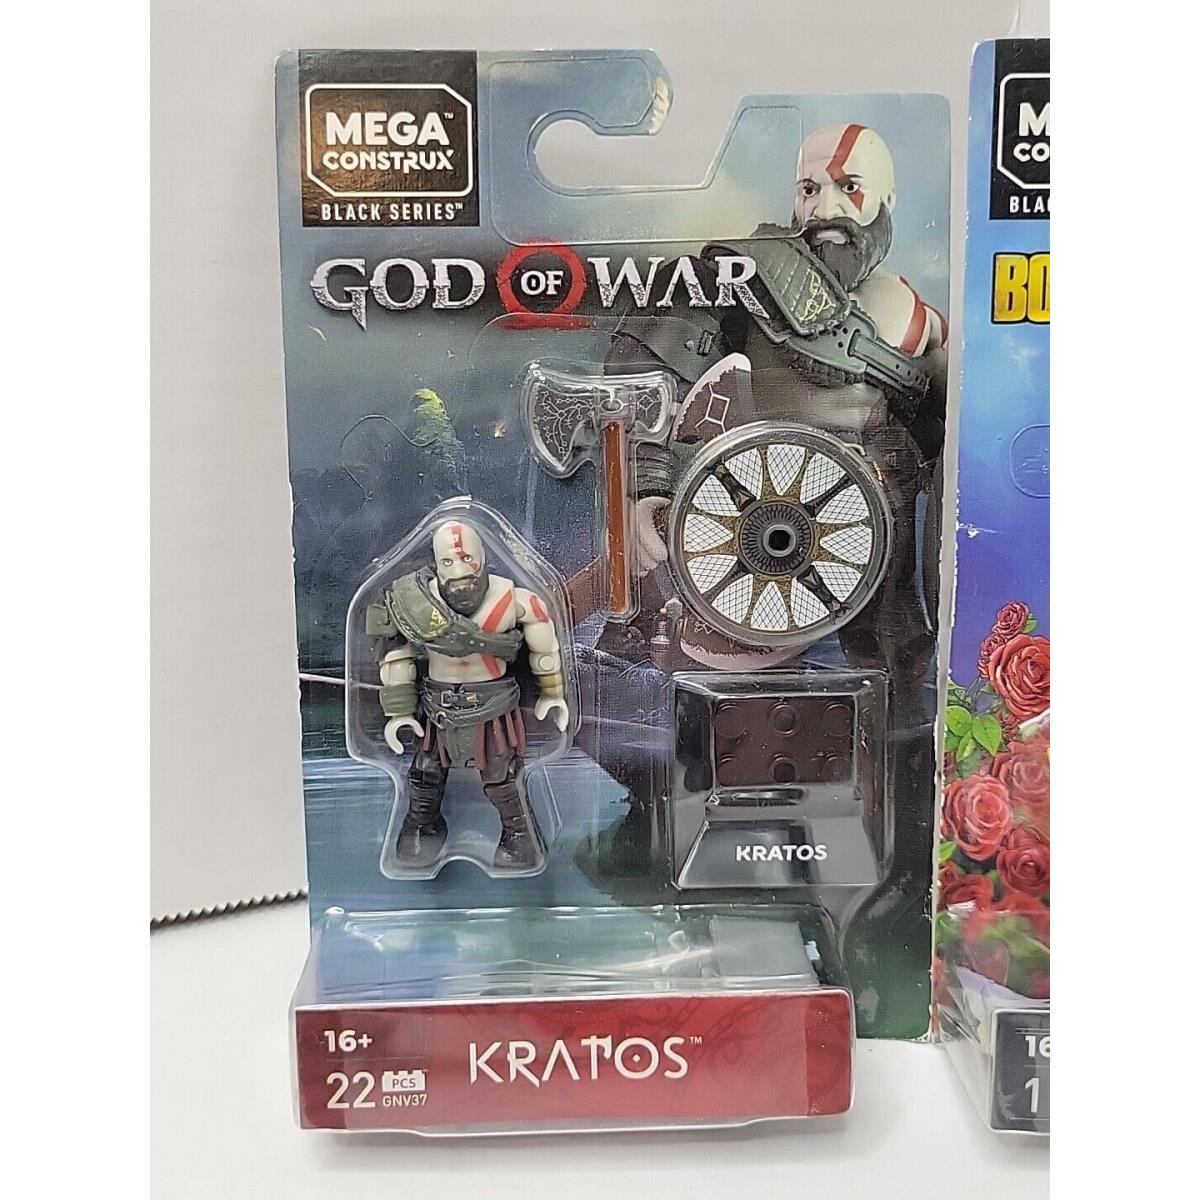 Mega Construx Black Series God of War Kratos Figure 22 Pieces + Claptrap 11 Pcs